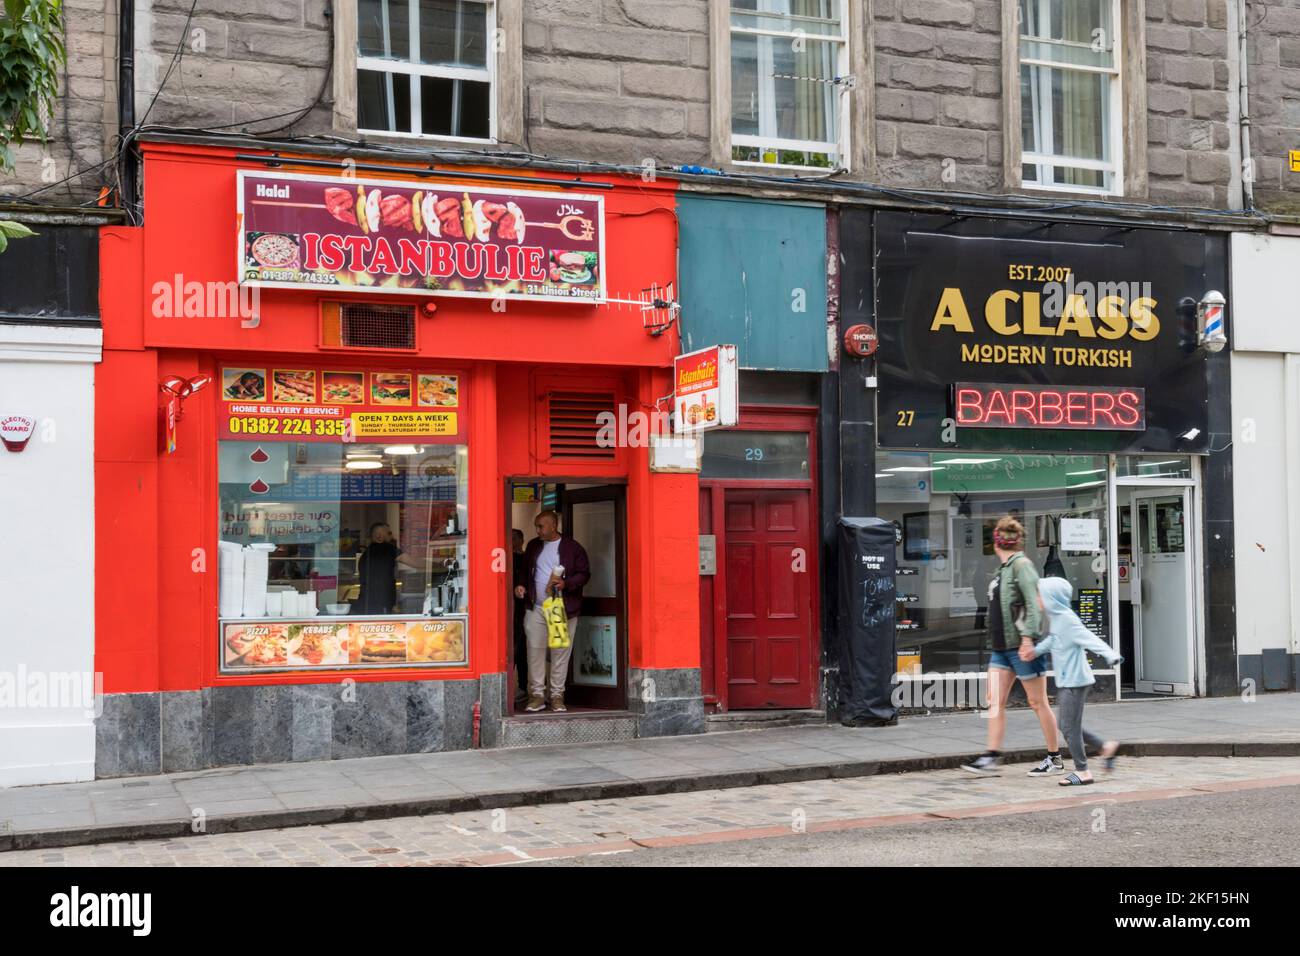 Nuovi usi per i negozi tradizionali. Il negozio di kebab Turco e i barbieri Turchi si trovano l'uno accanto all'altro in Union Street, Dundee. Foto Stock